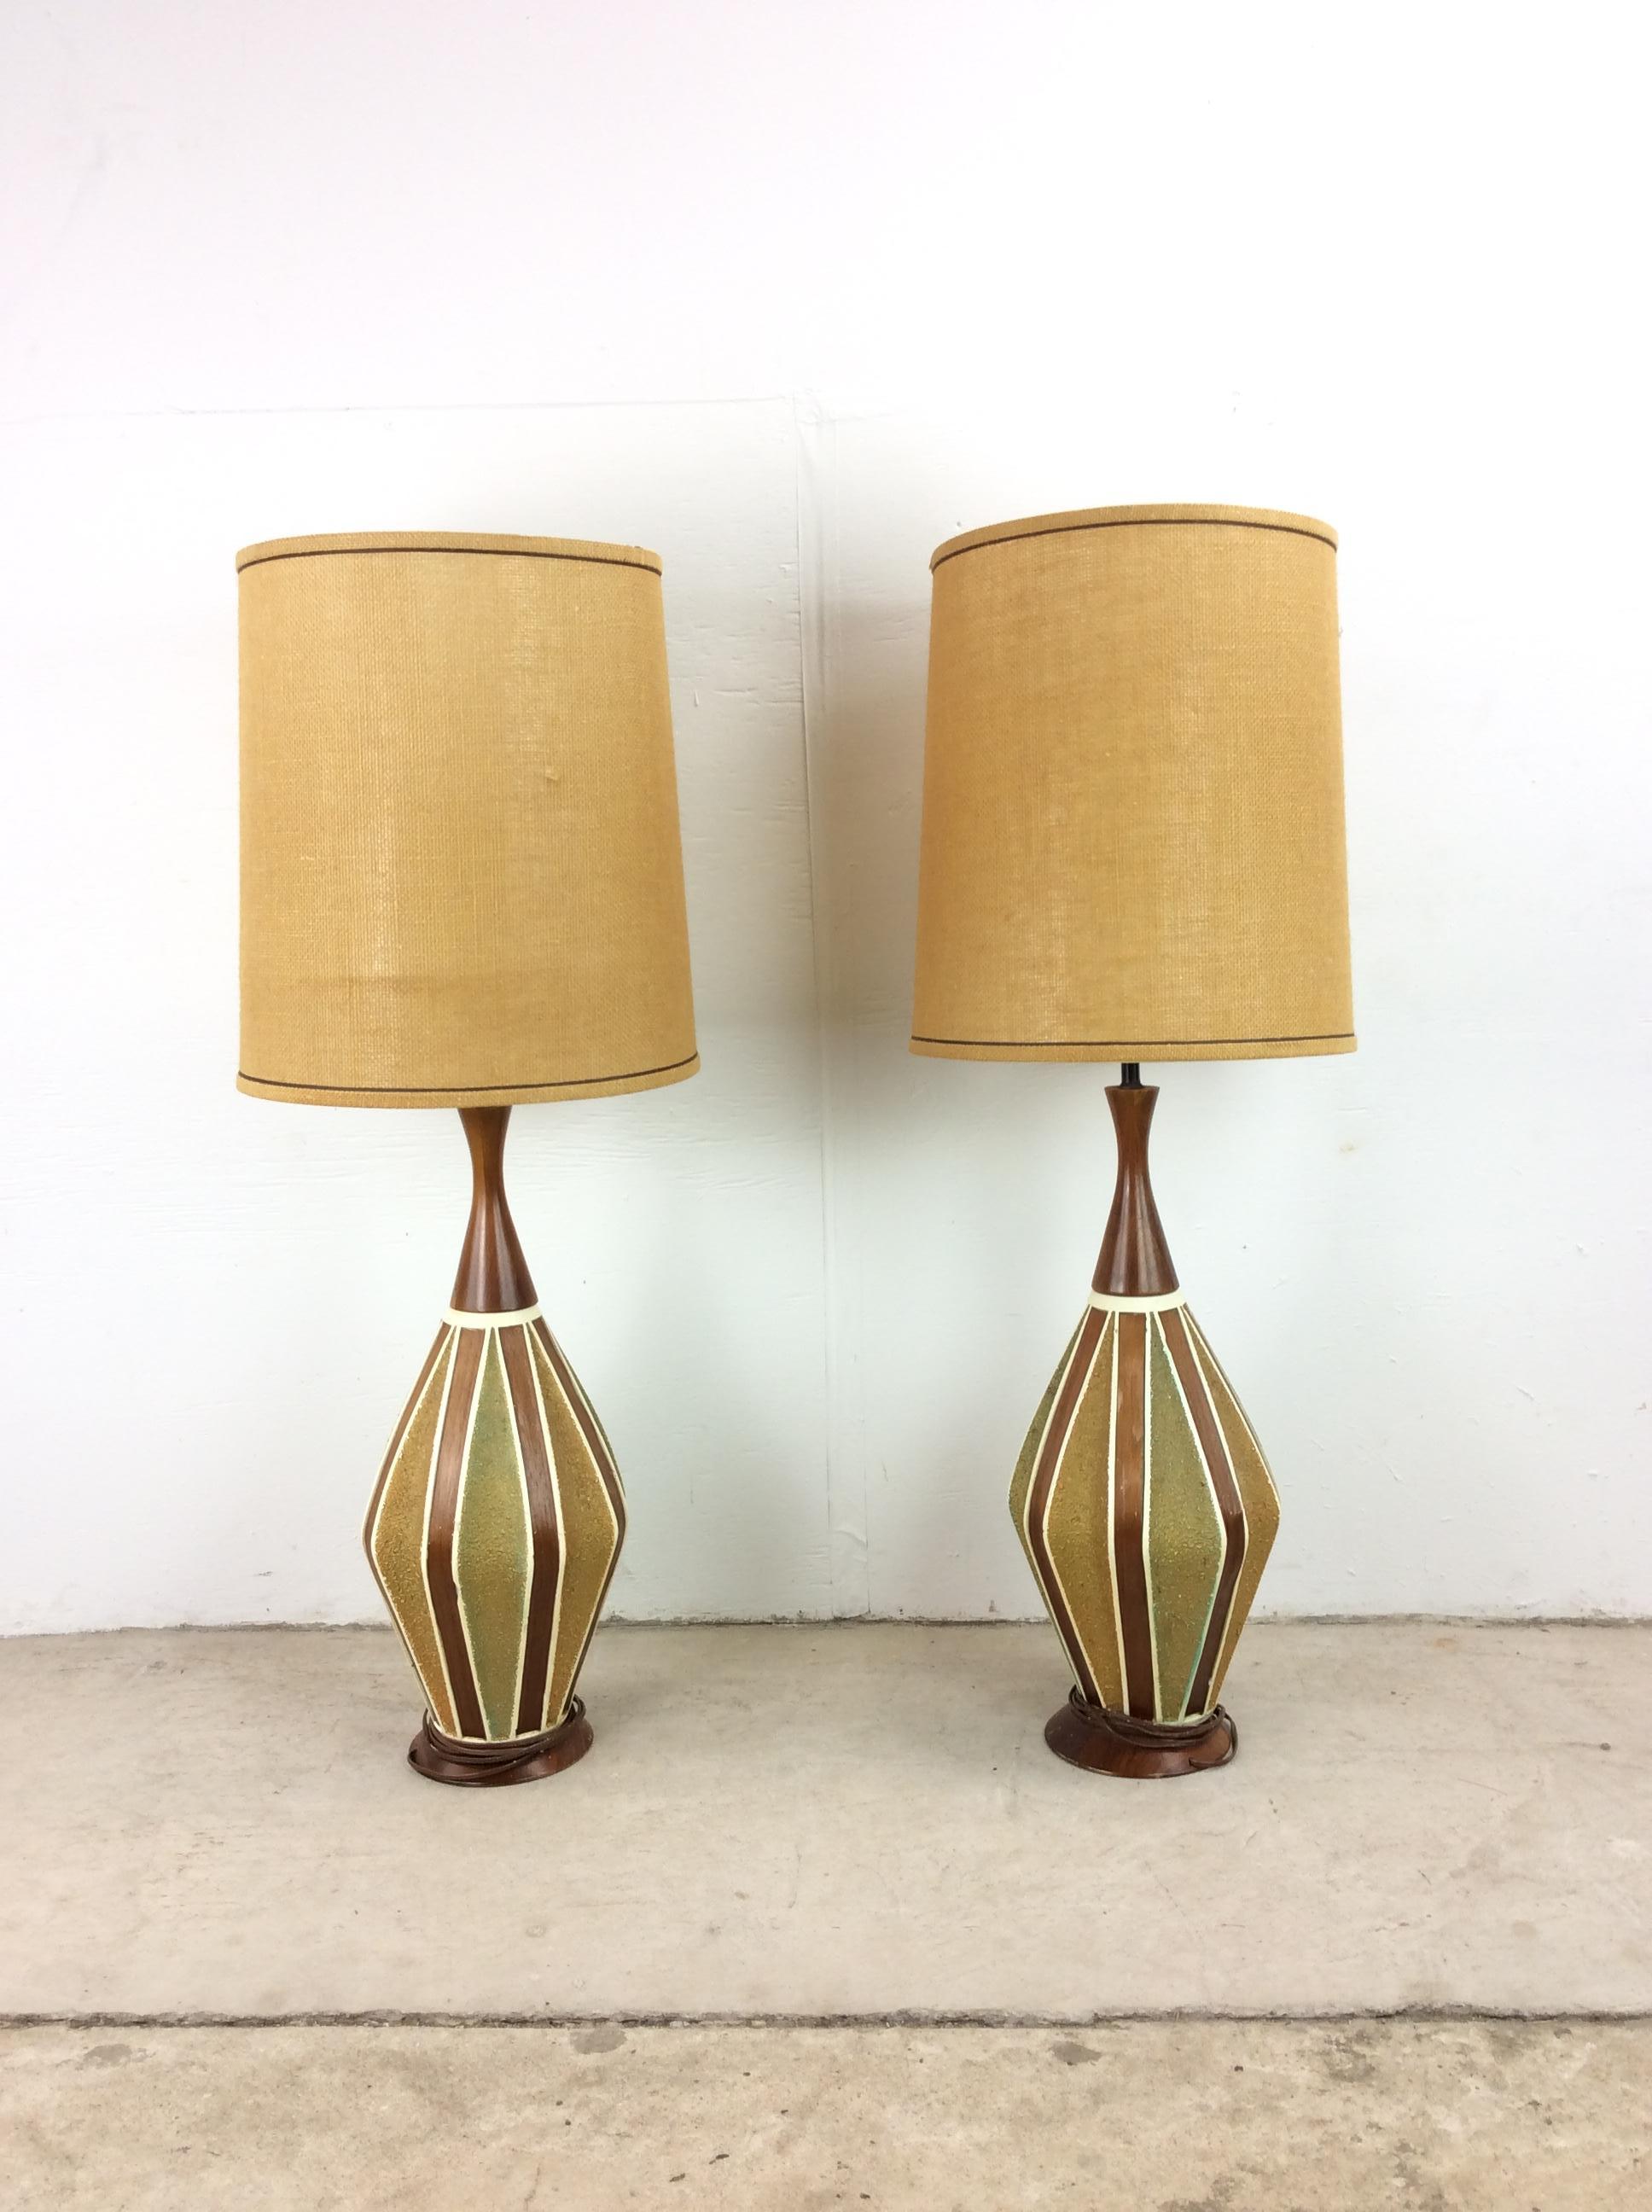 Dieses Paar moderner Tischlampen aus der Mitte des Jahrhunderts besteht aus einem lackierten Keramikkörper mit Holzfurnierdetails und einem gedrechselten Holzhals und -fuß.

Abmessungen: 9b 9d 41h
Durchmesser des Lampenschirms: 13,5 Zoll

Zustand: